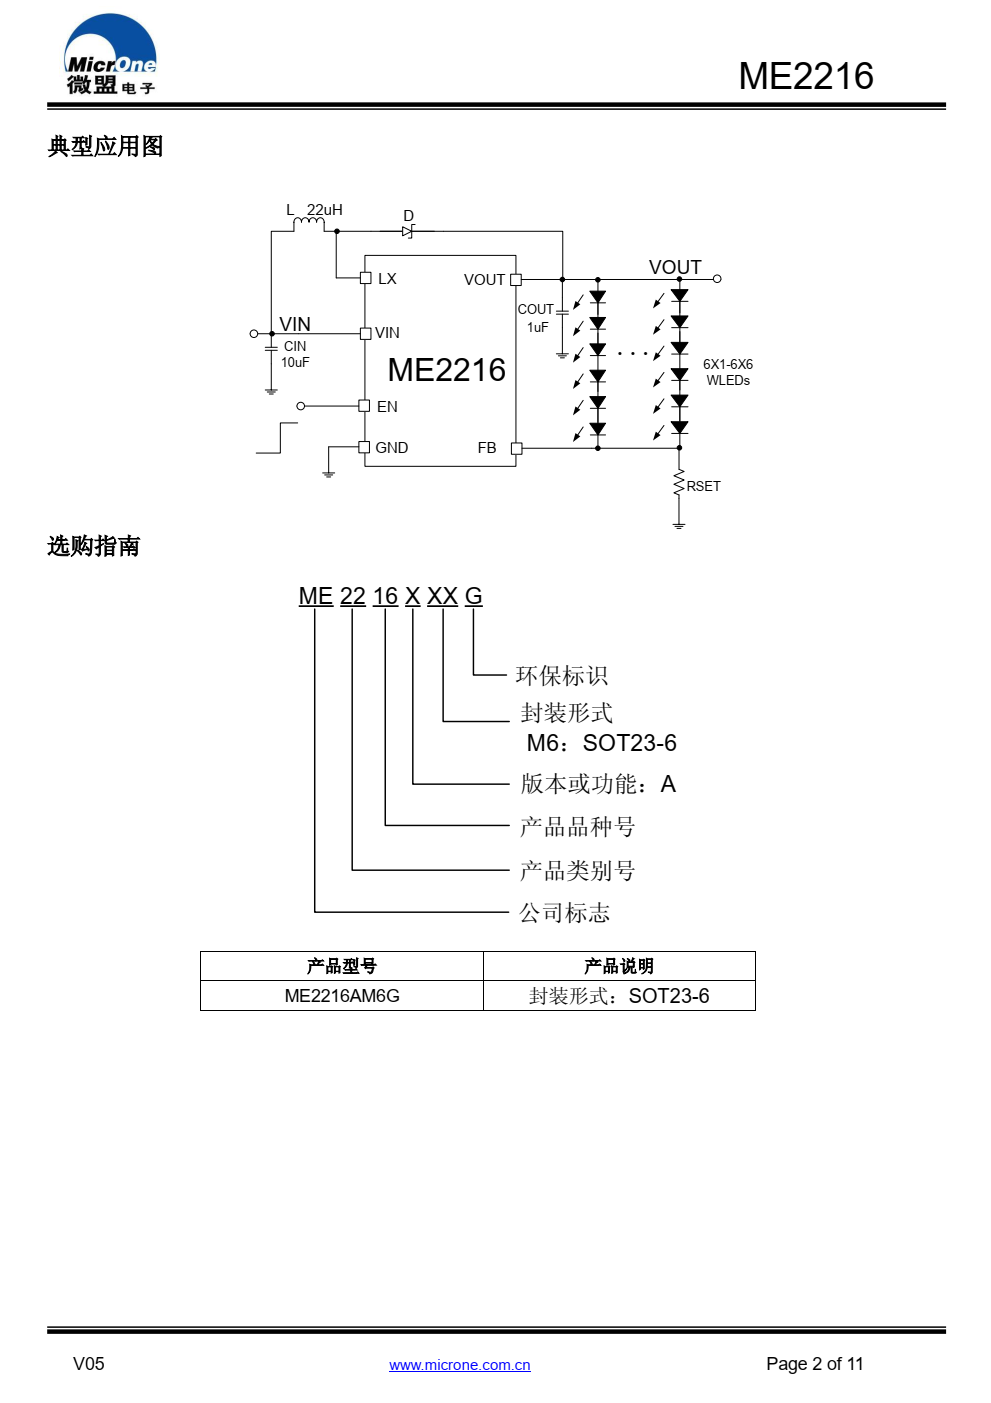 ME2216 是一款高频、高效，应用于驱动白光 LED 的非同步升压转换器